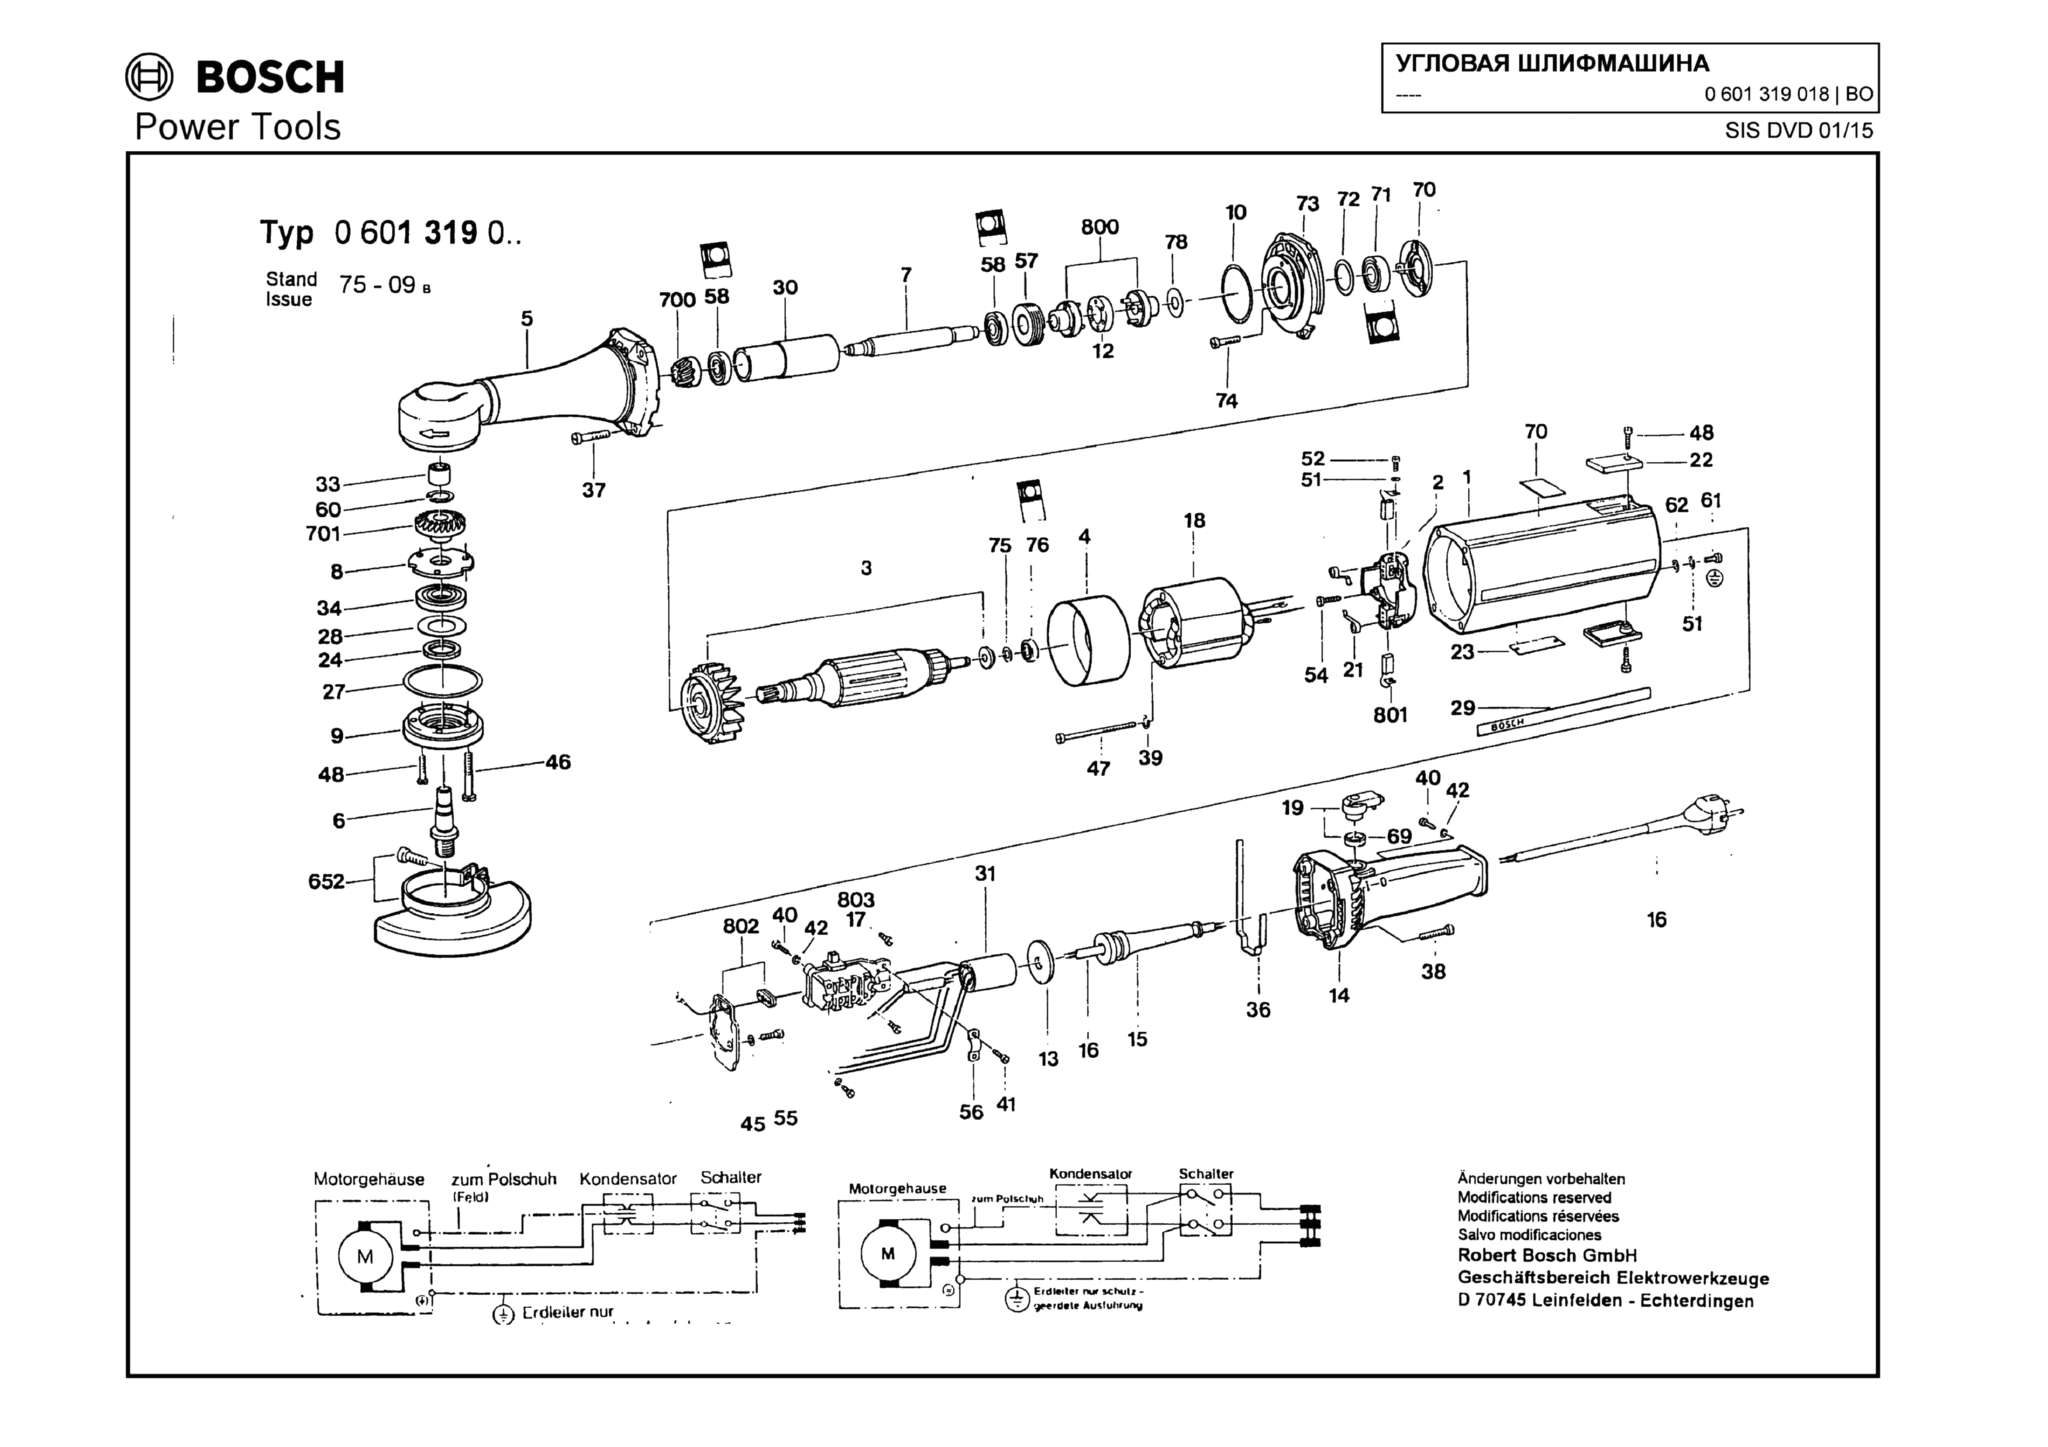 Запчасти, схема и деталировка Bosch (ТИП 0601319018)